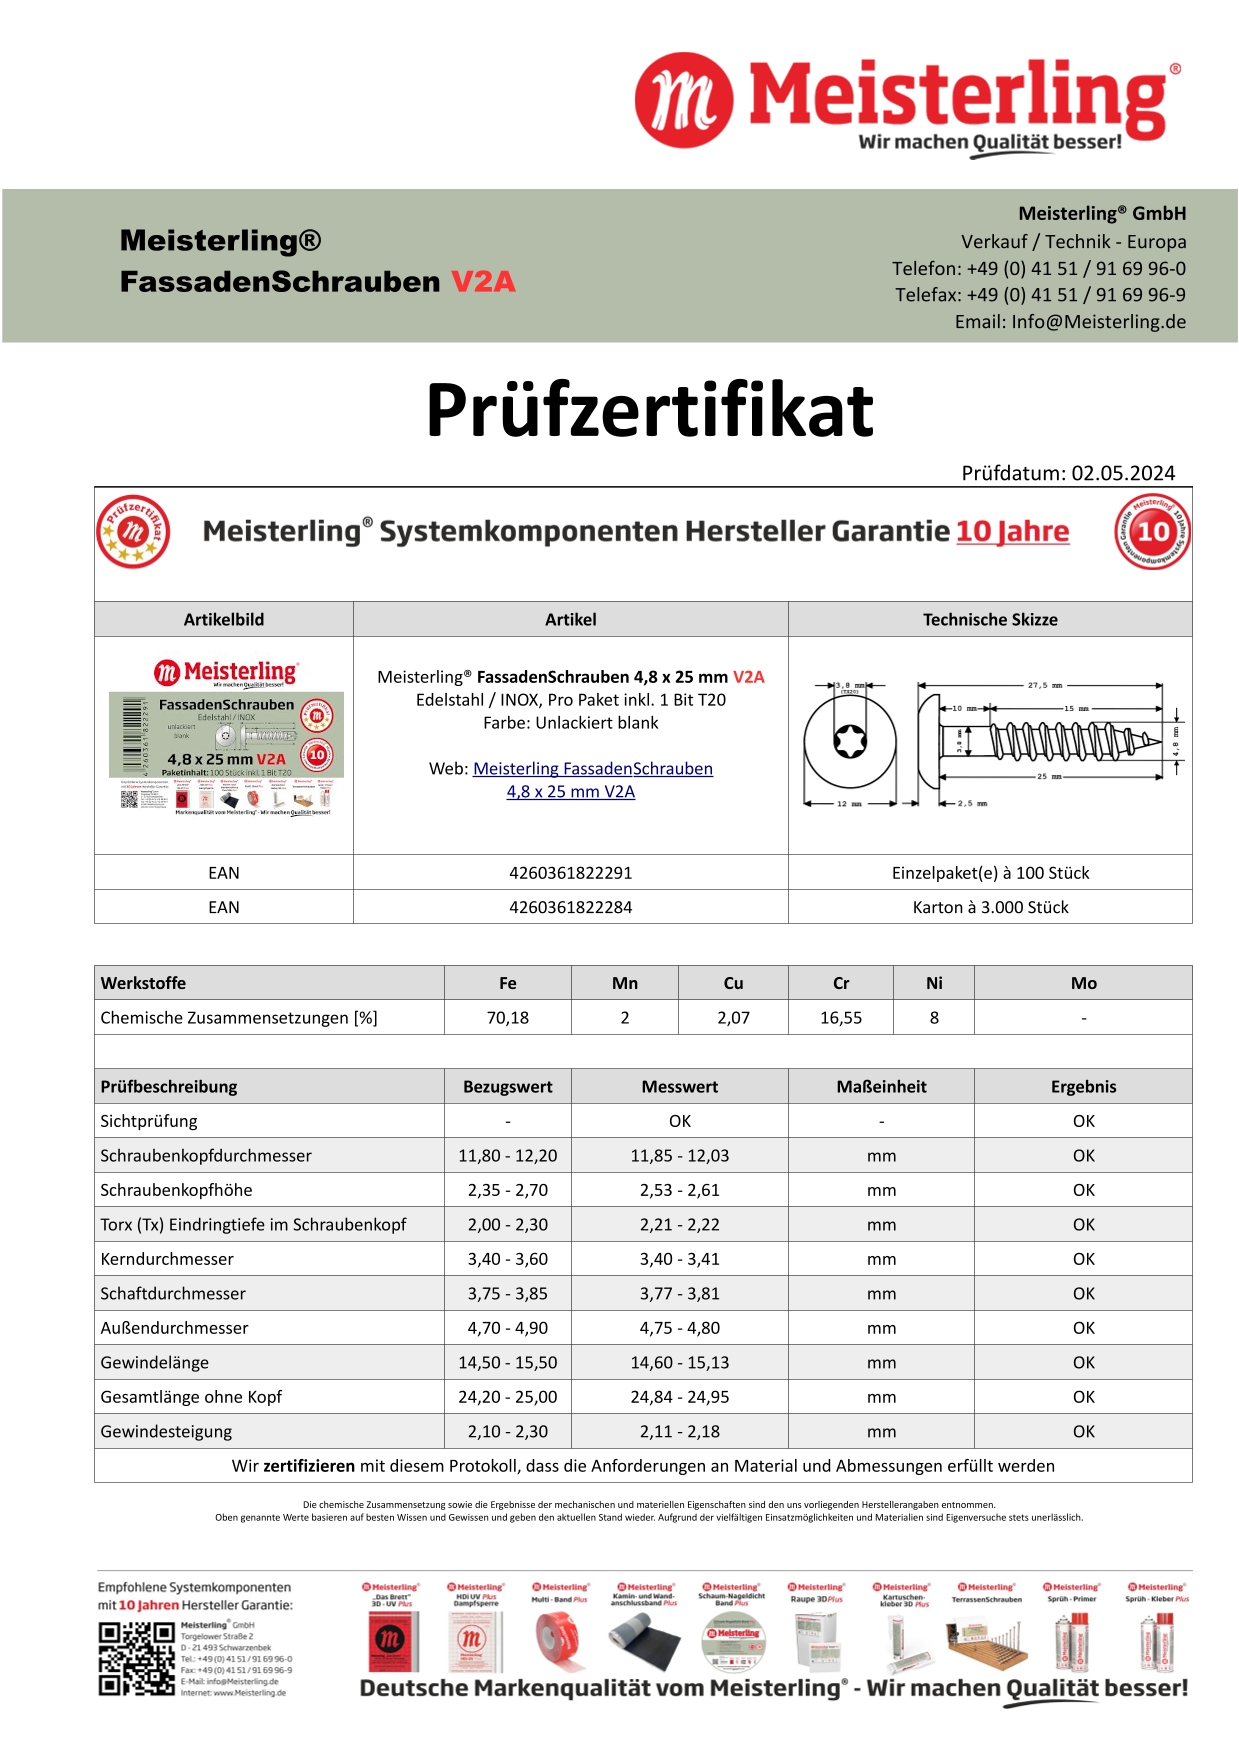 Prüfzertifikat Meisterling® FassadenSchrauben 4,8 x 25 mm V2a unlackiert blank